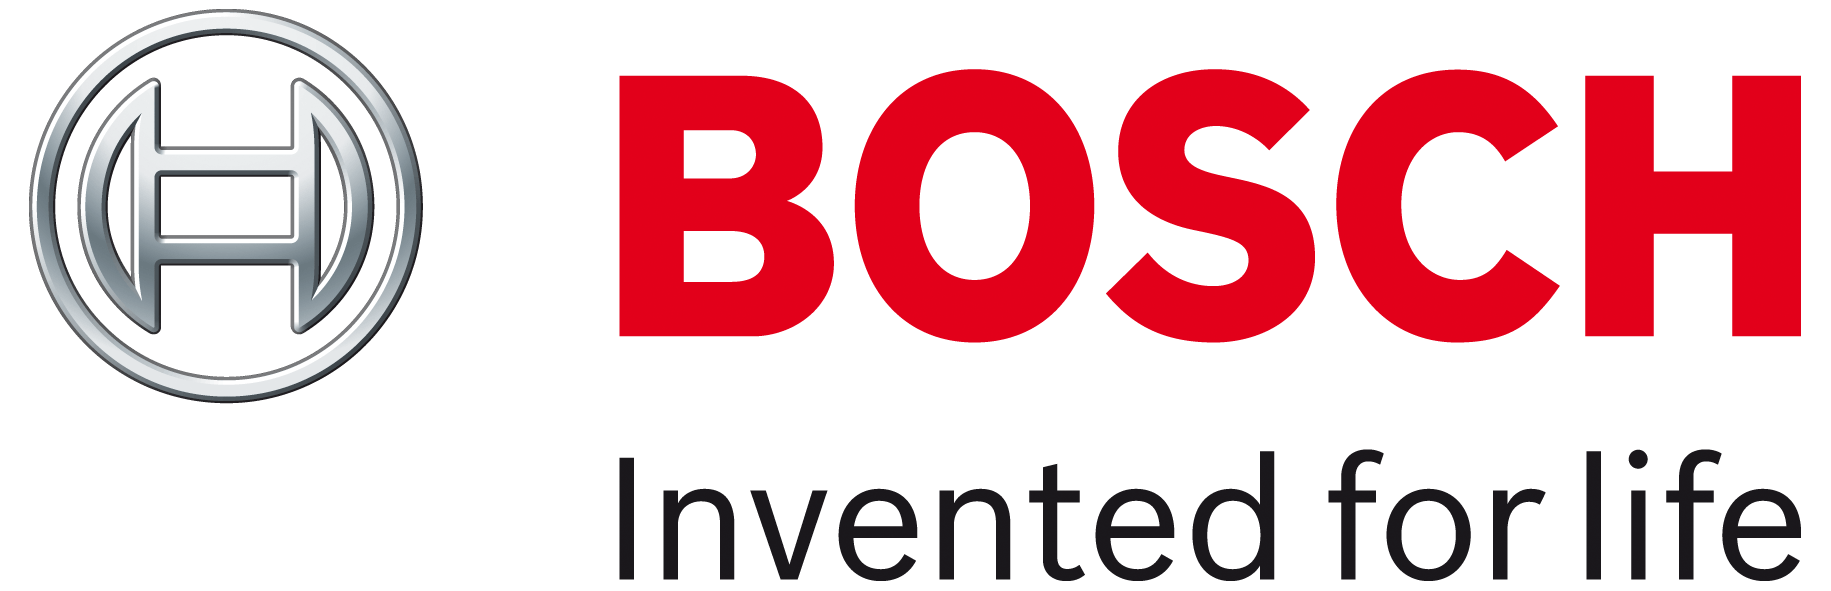 Robert Bosch Recruitment